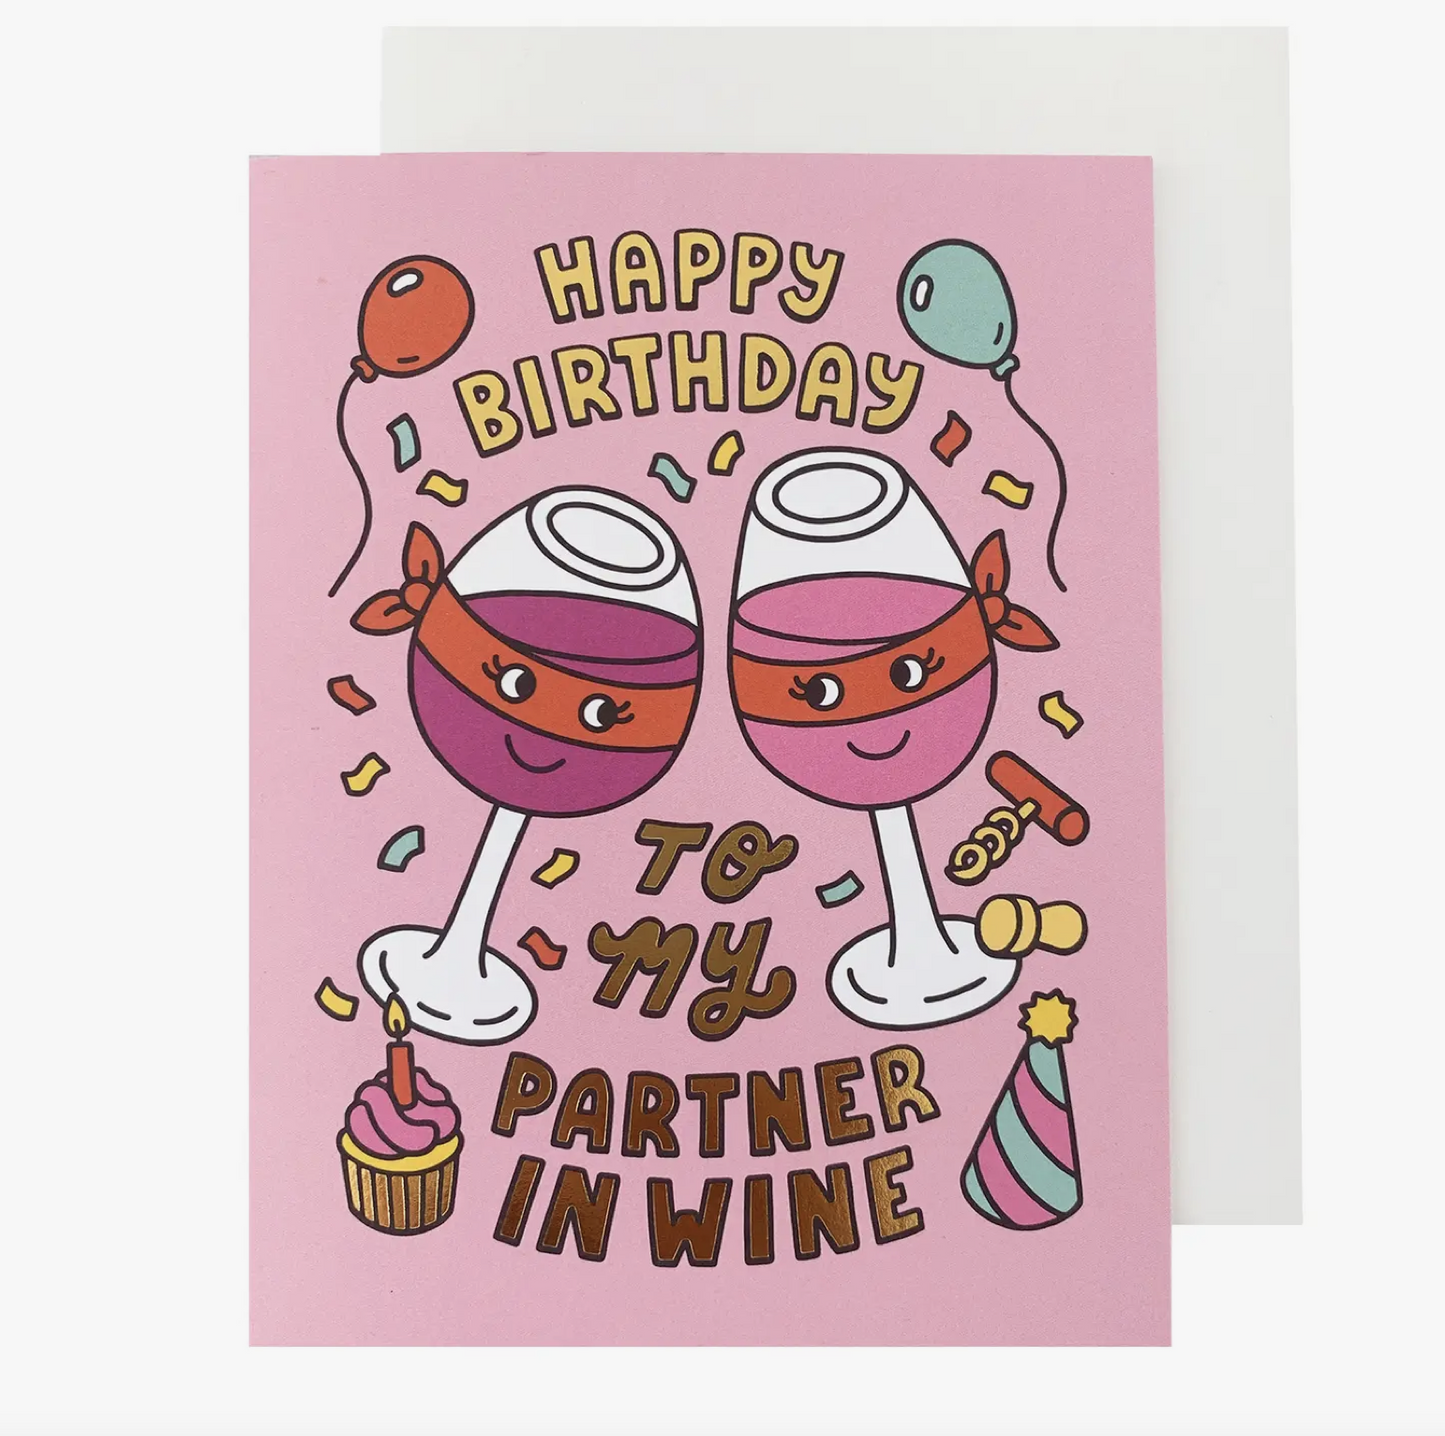 Partner in Wine